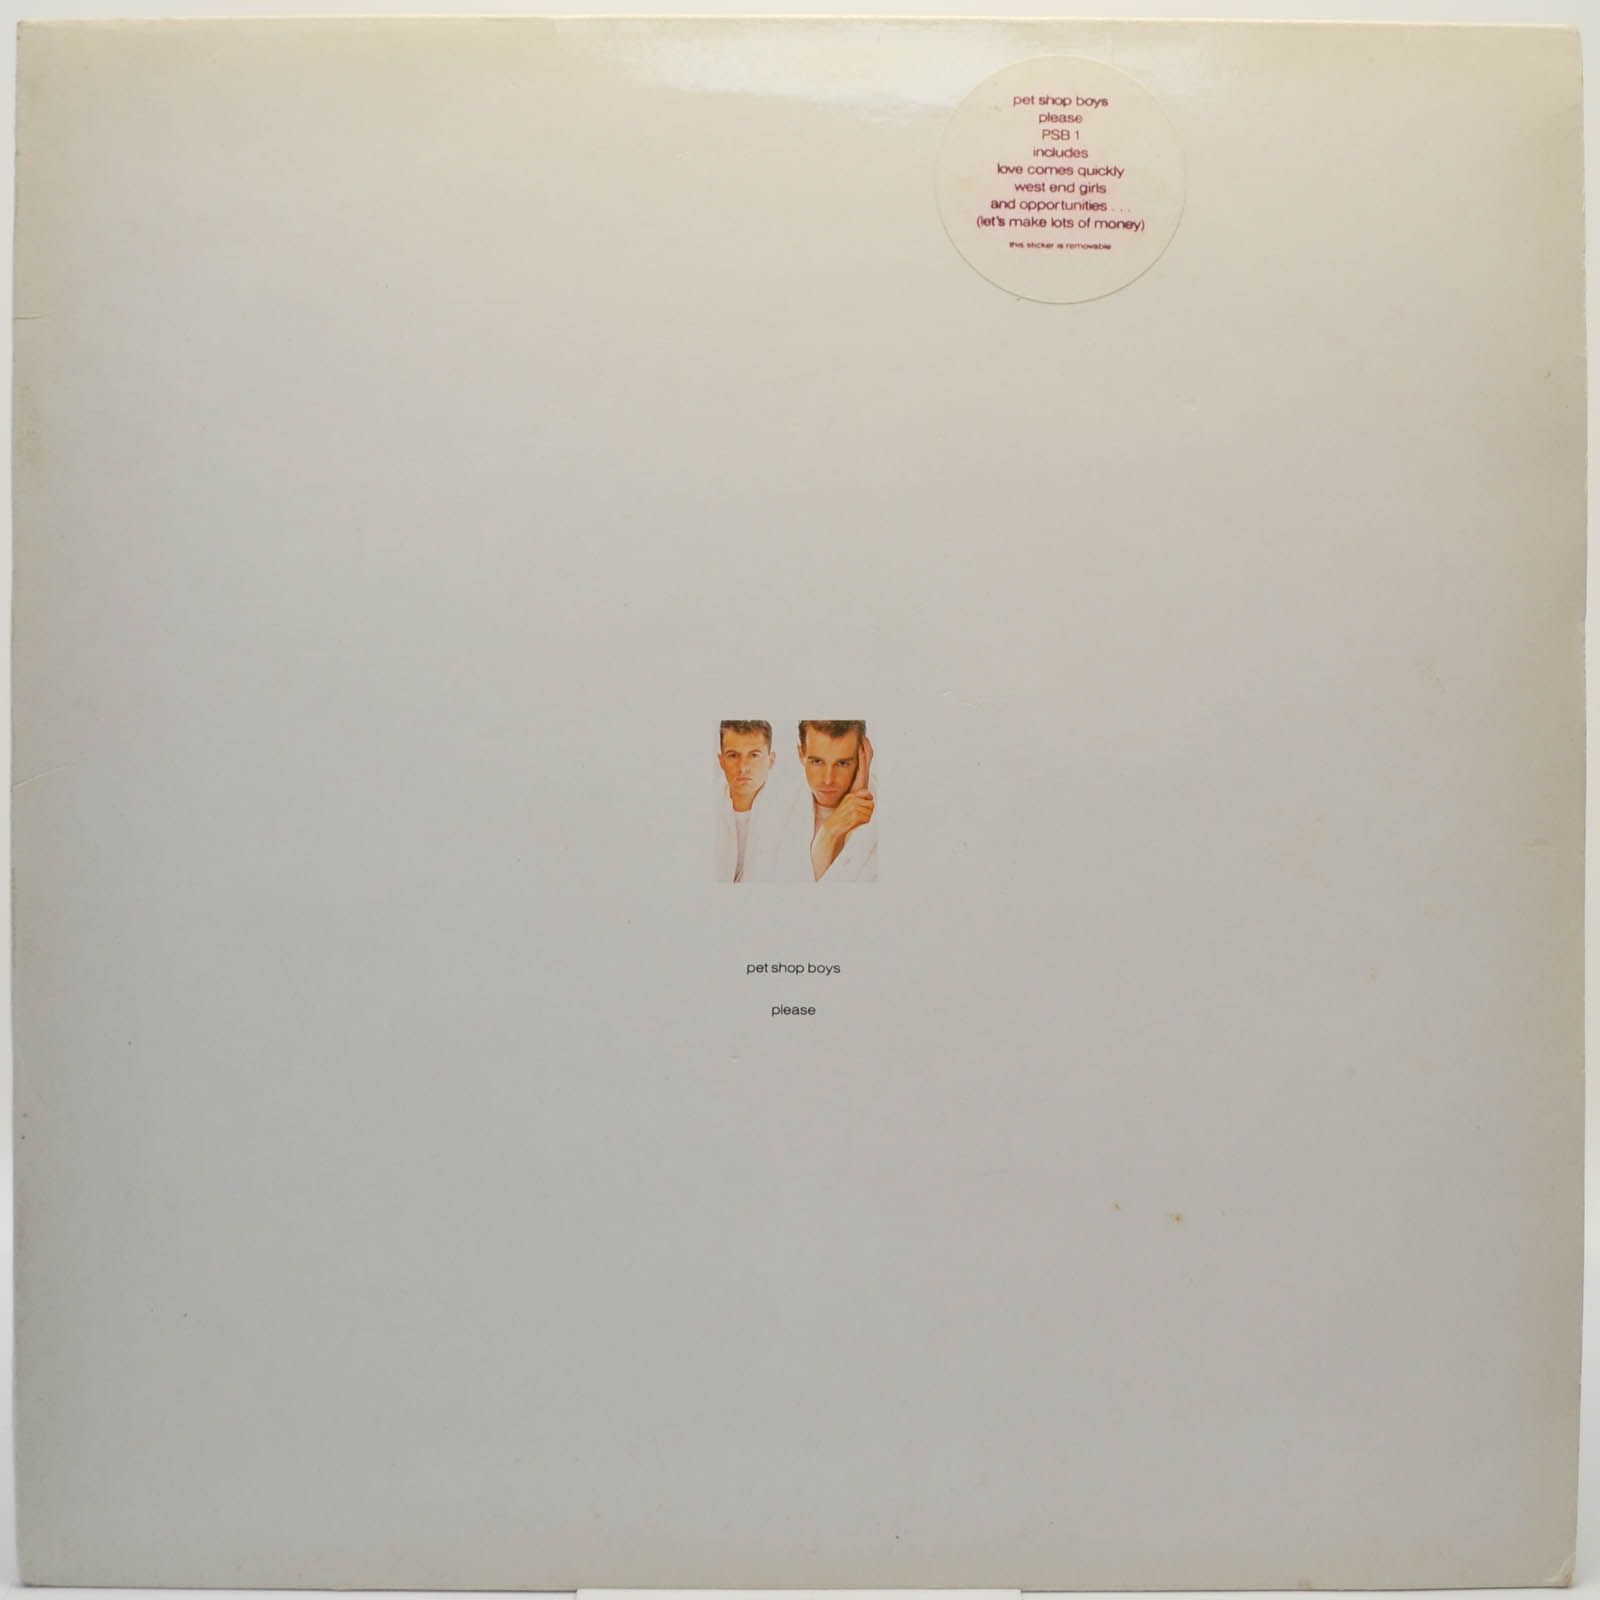 Pet Shop Boys — Please (1-st, UK), 1986